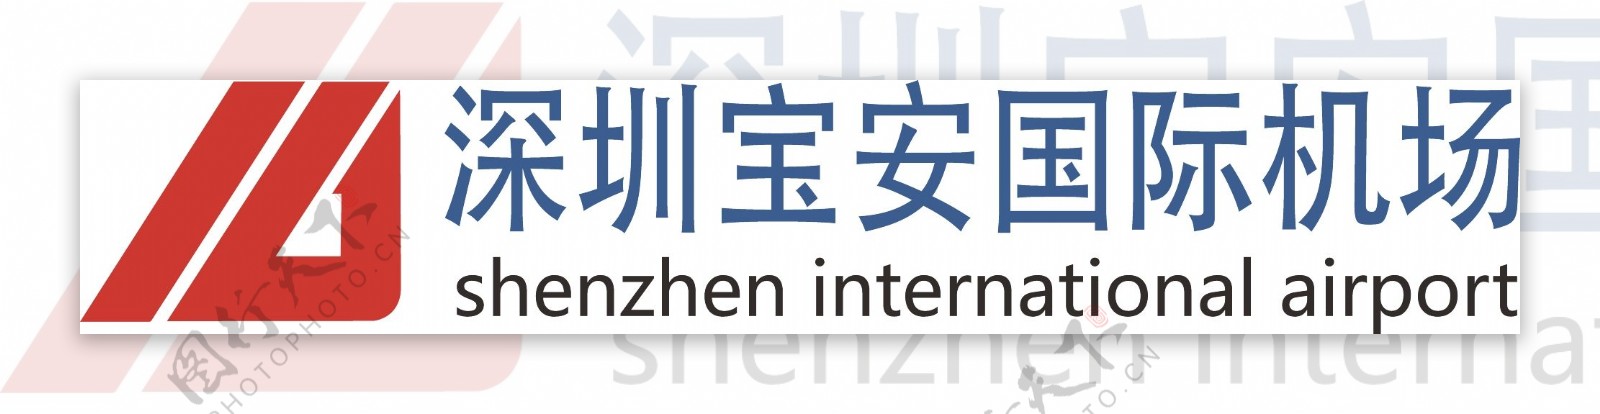 深圳宝安国际机场logo